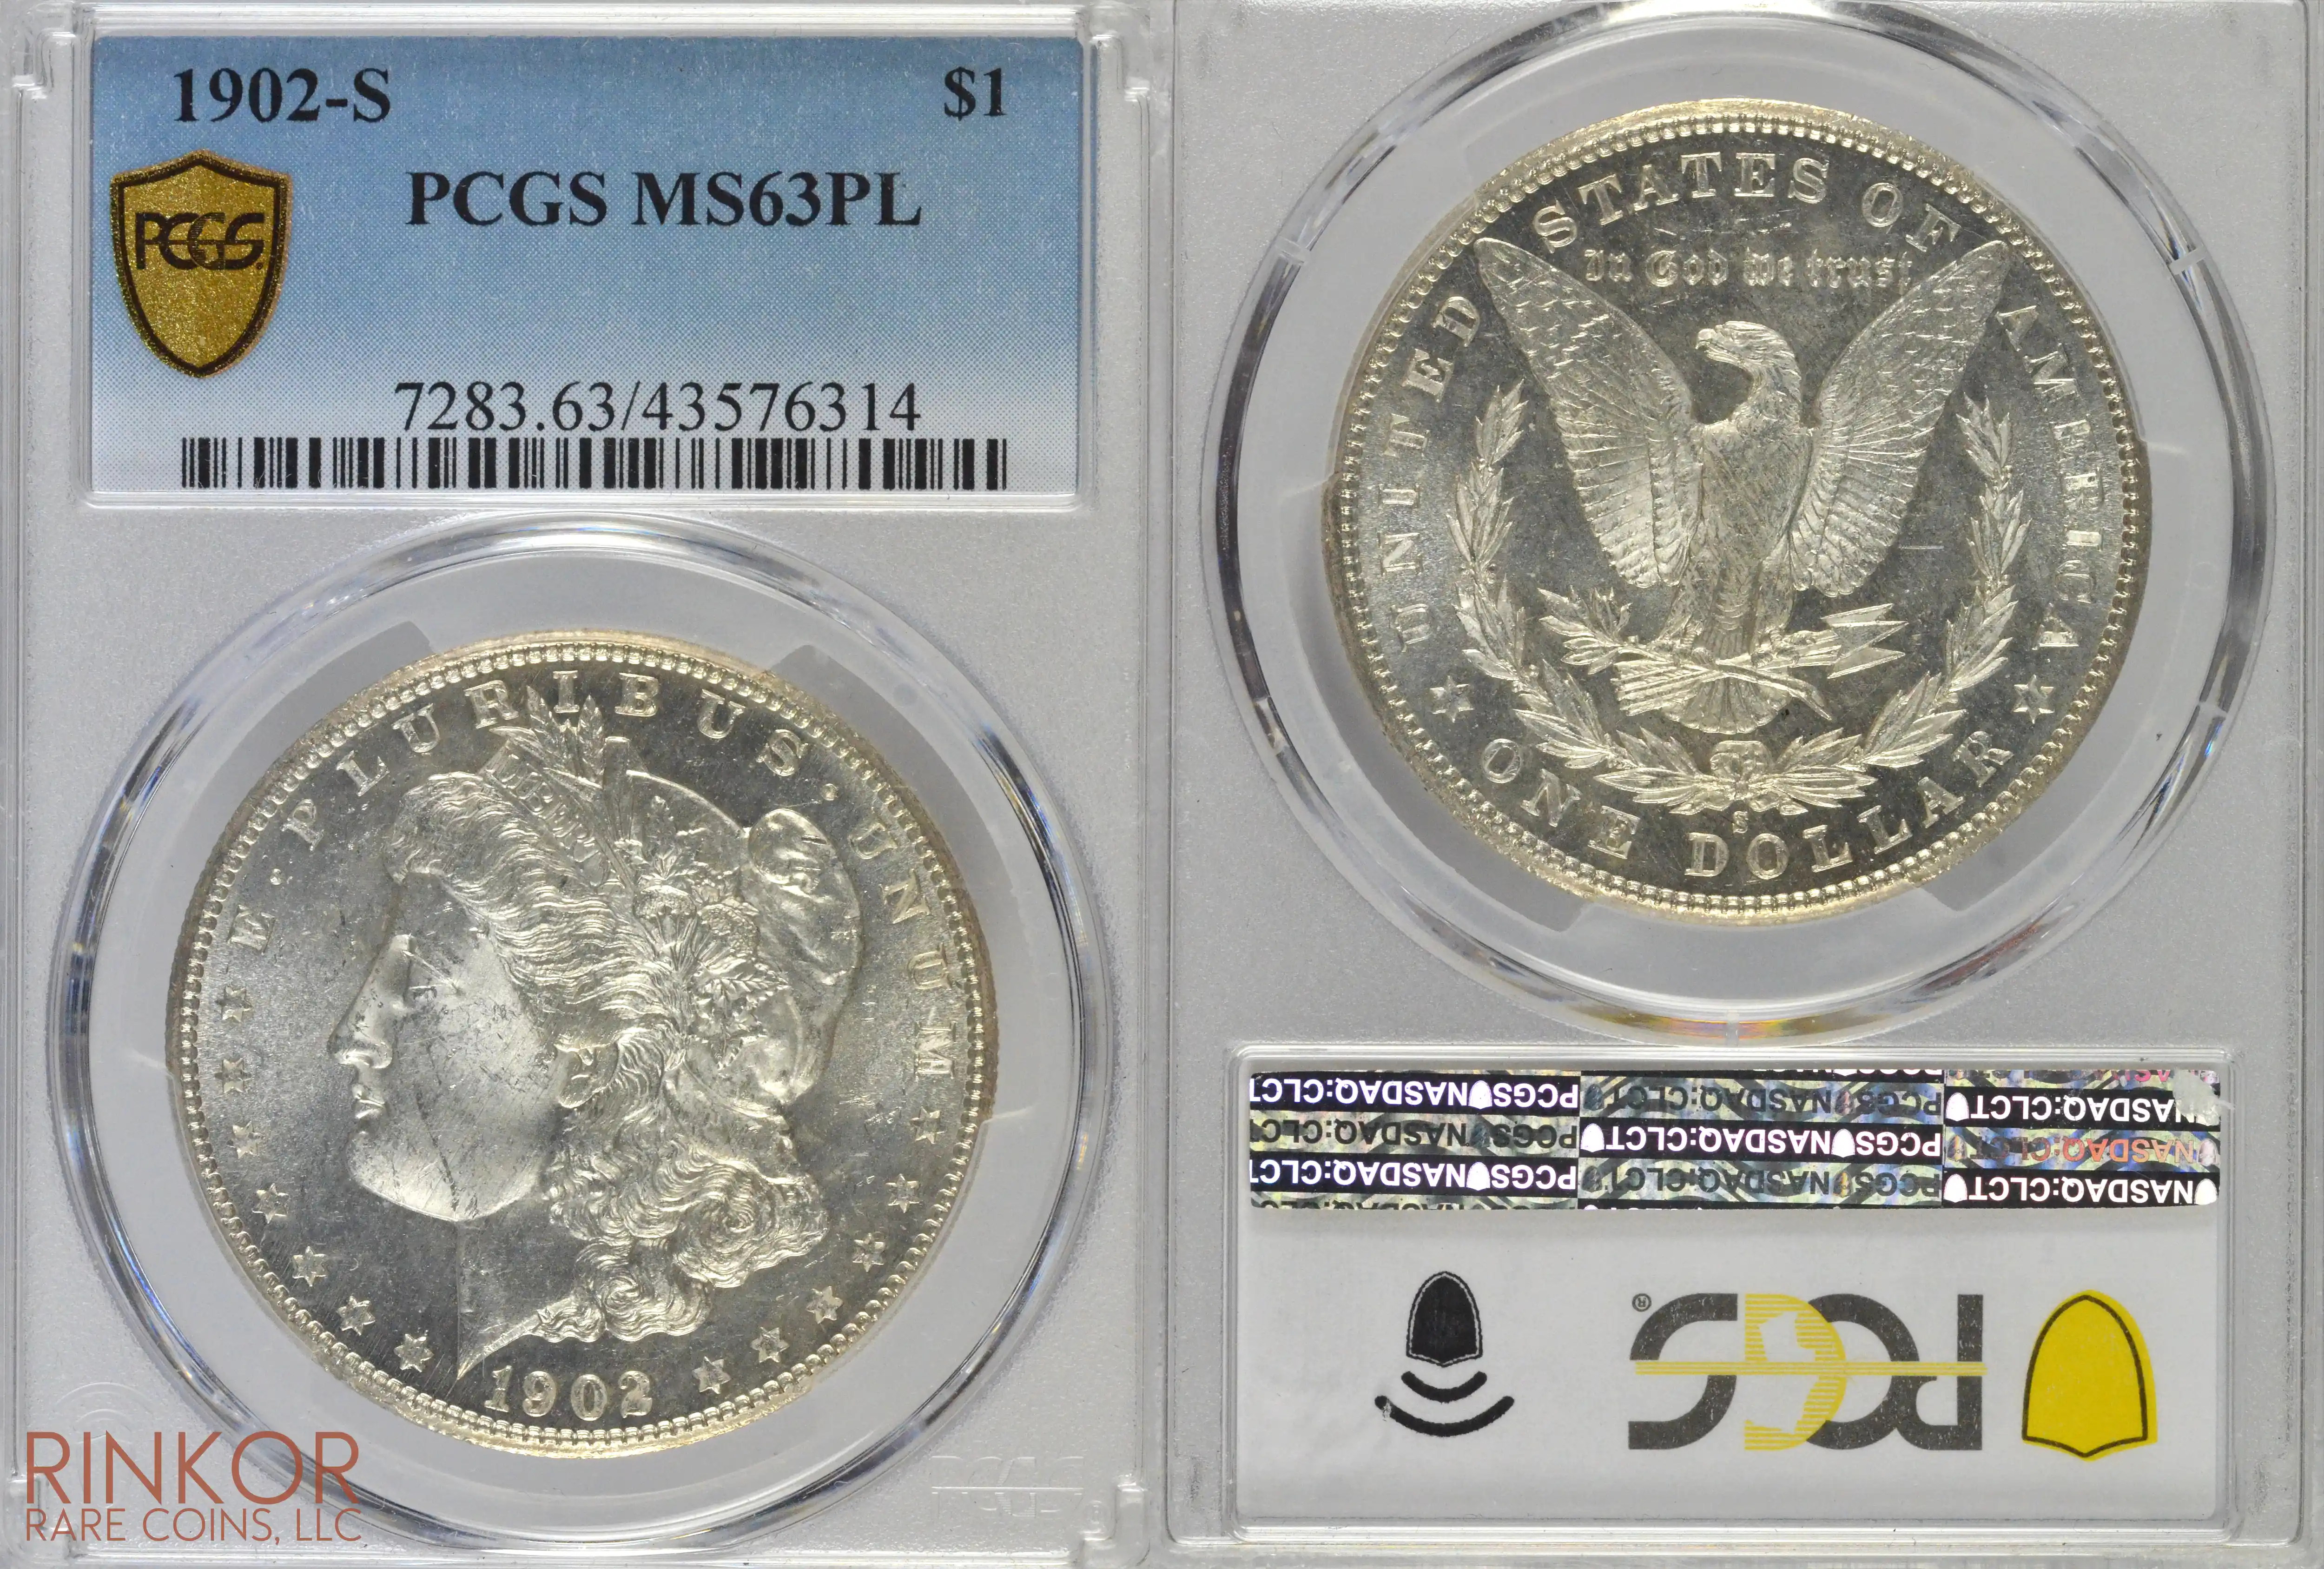 1902-S $1 PCGS MS 63 PL